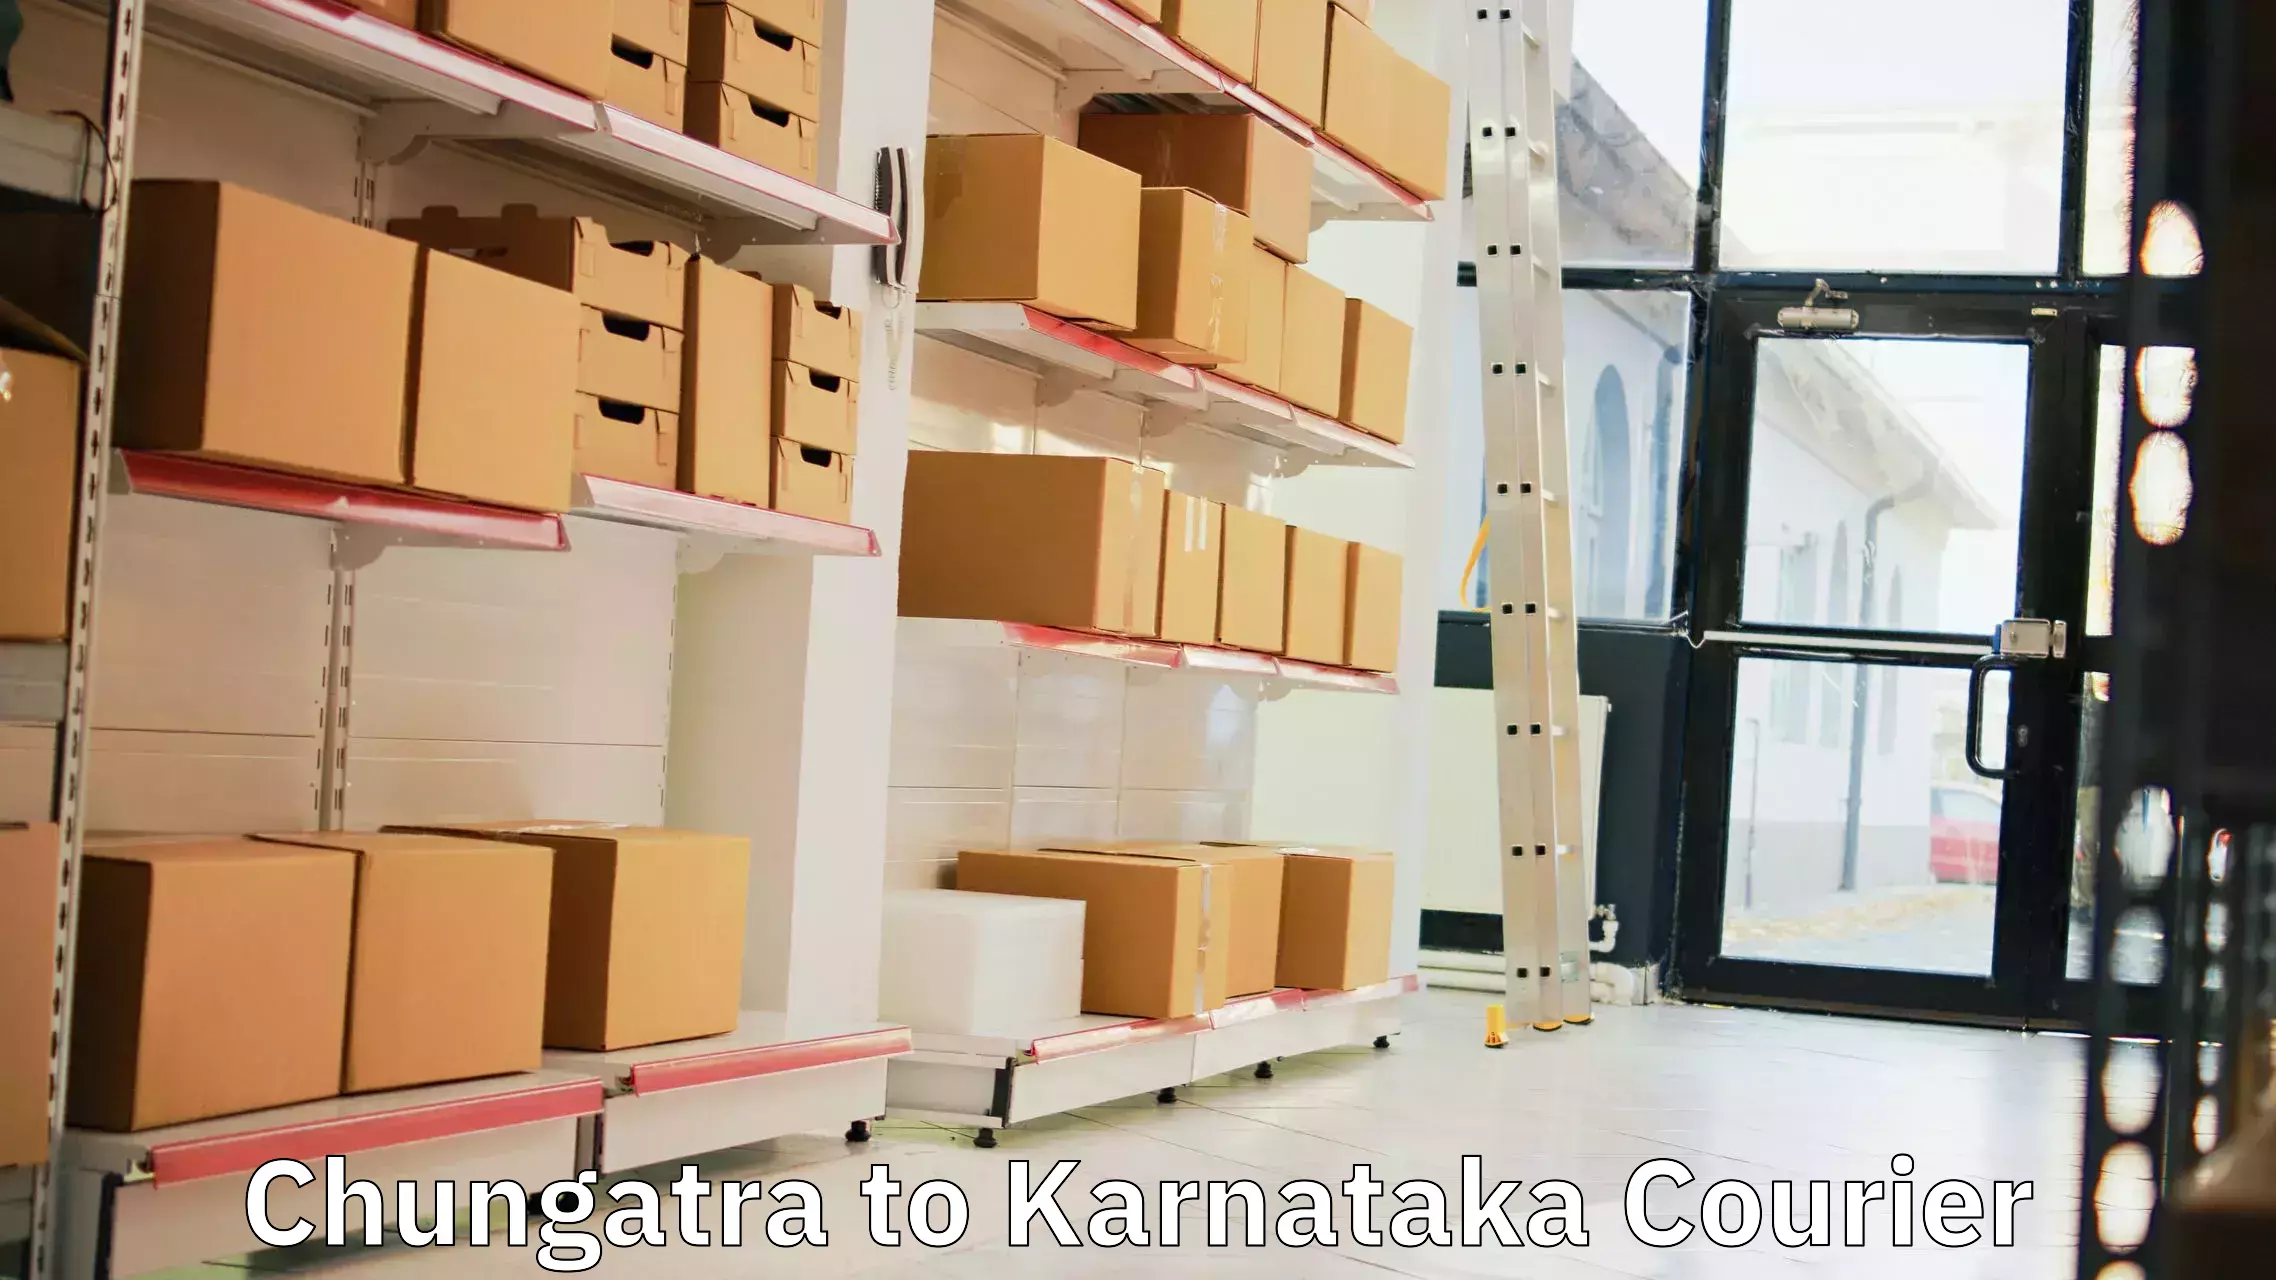 Efficient freight service Chungatra to Sagara